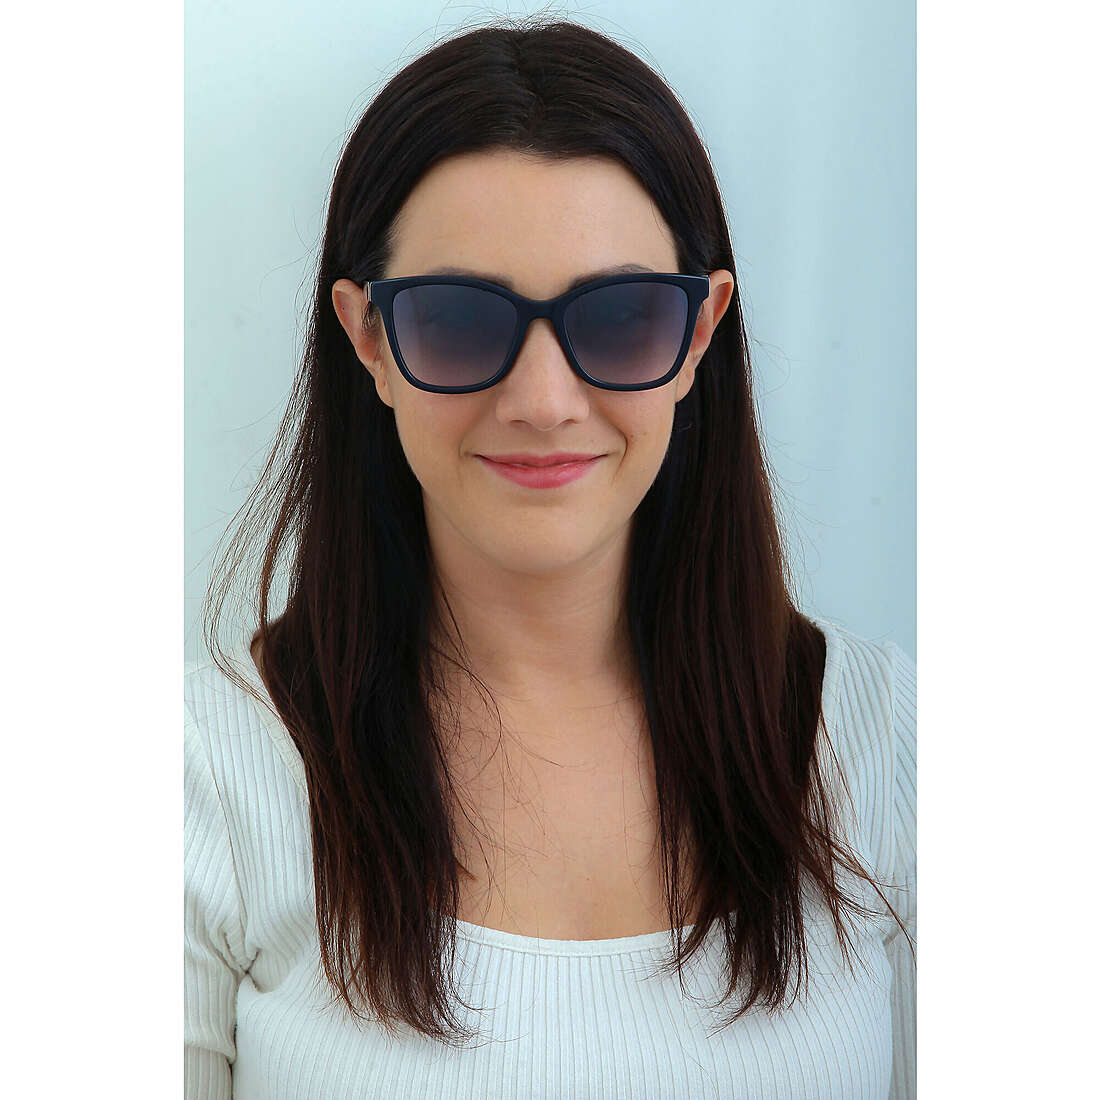 Nina Ricci occhiali da sole donna SNR3570D82 indosso